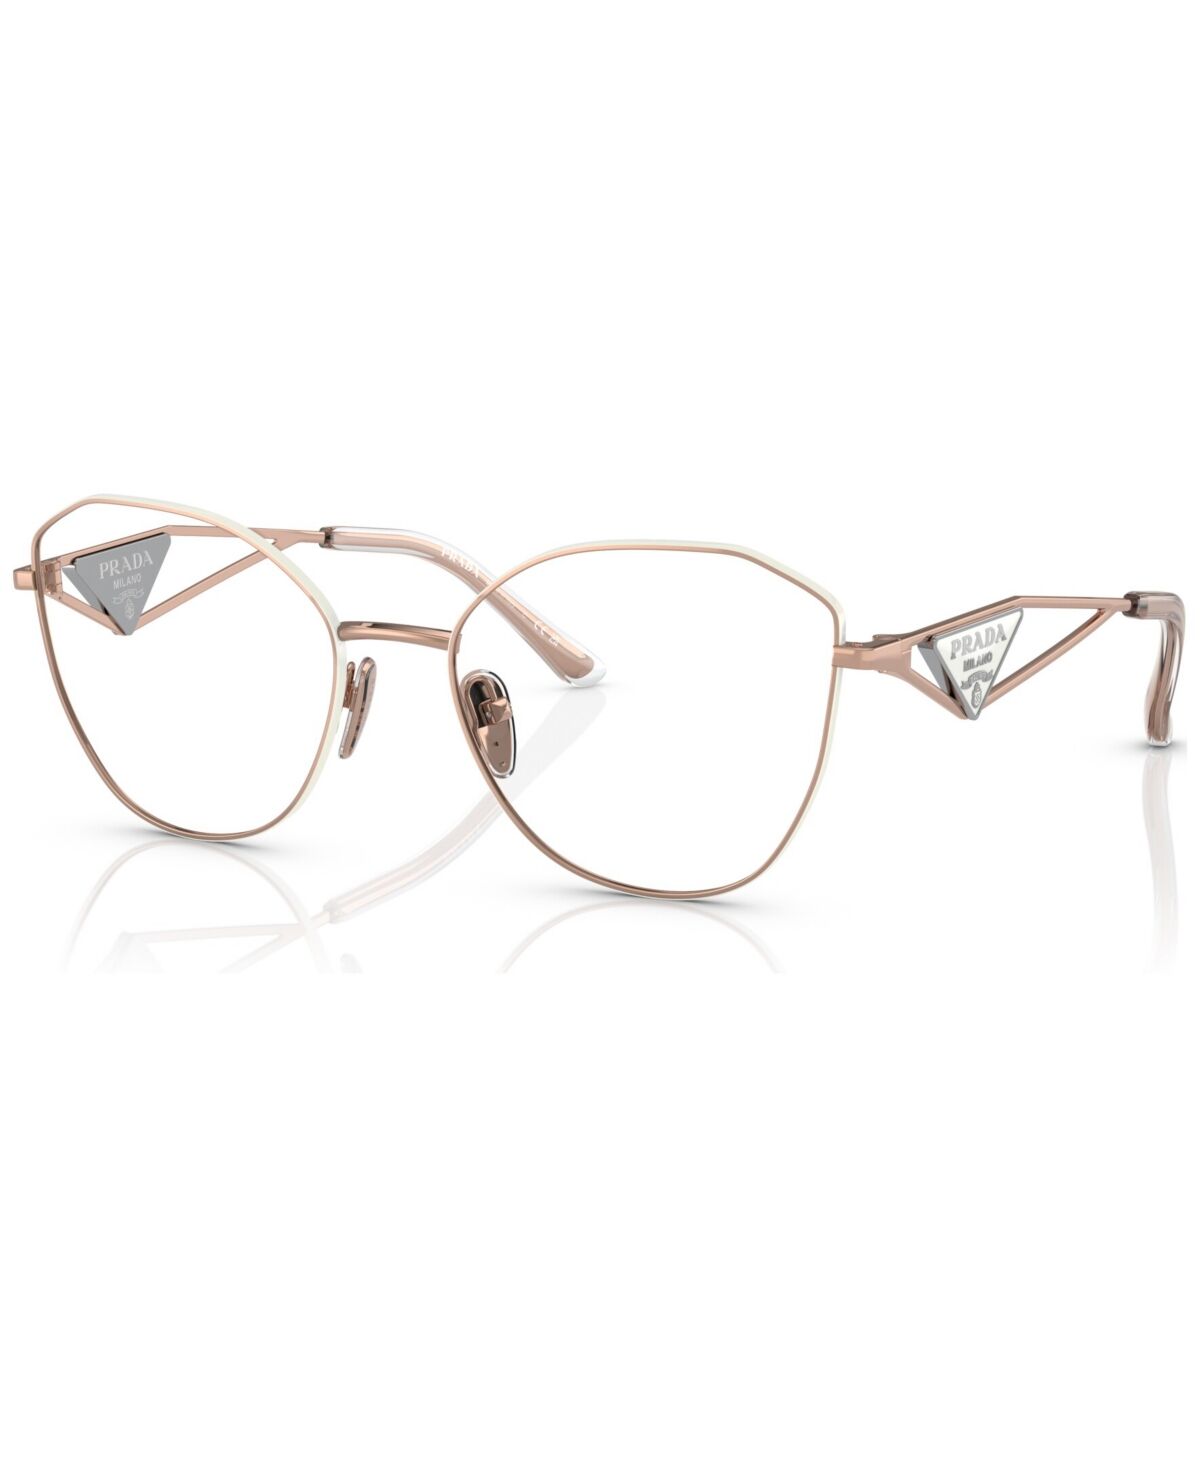 Prada Women's Irregular Eyeglasses, Pr 52ZV53-o - Pink Gold-Tone